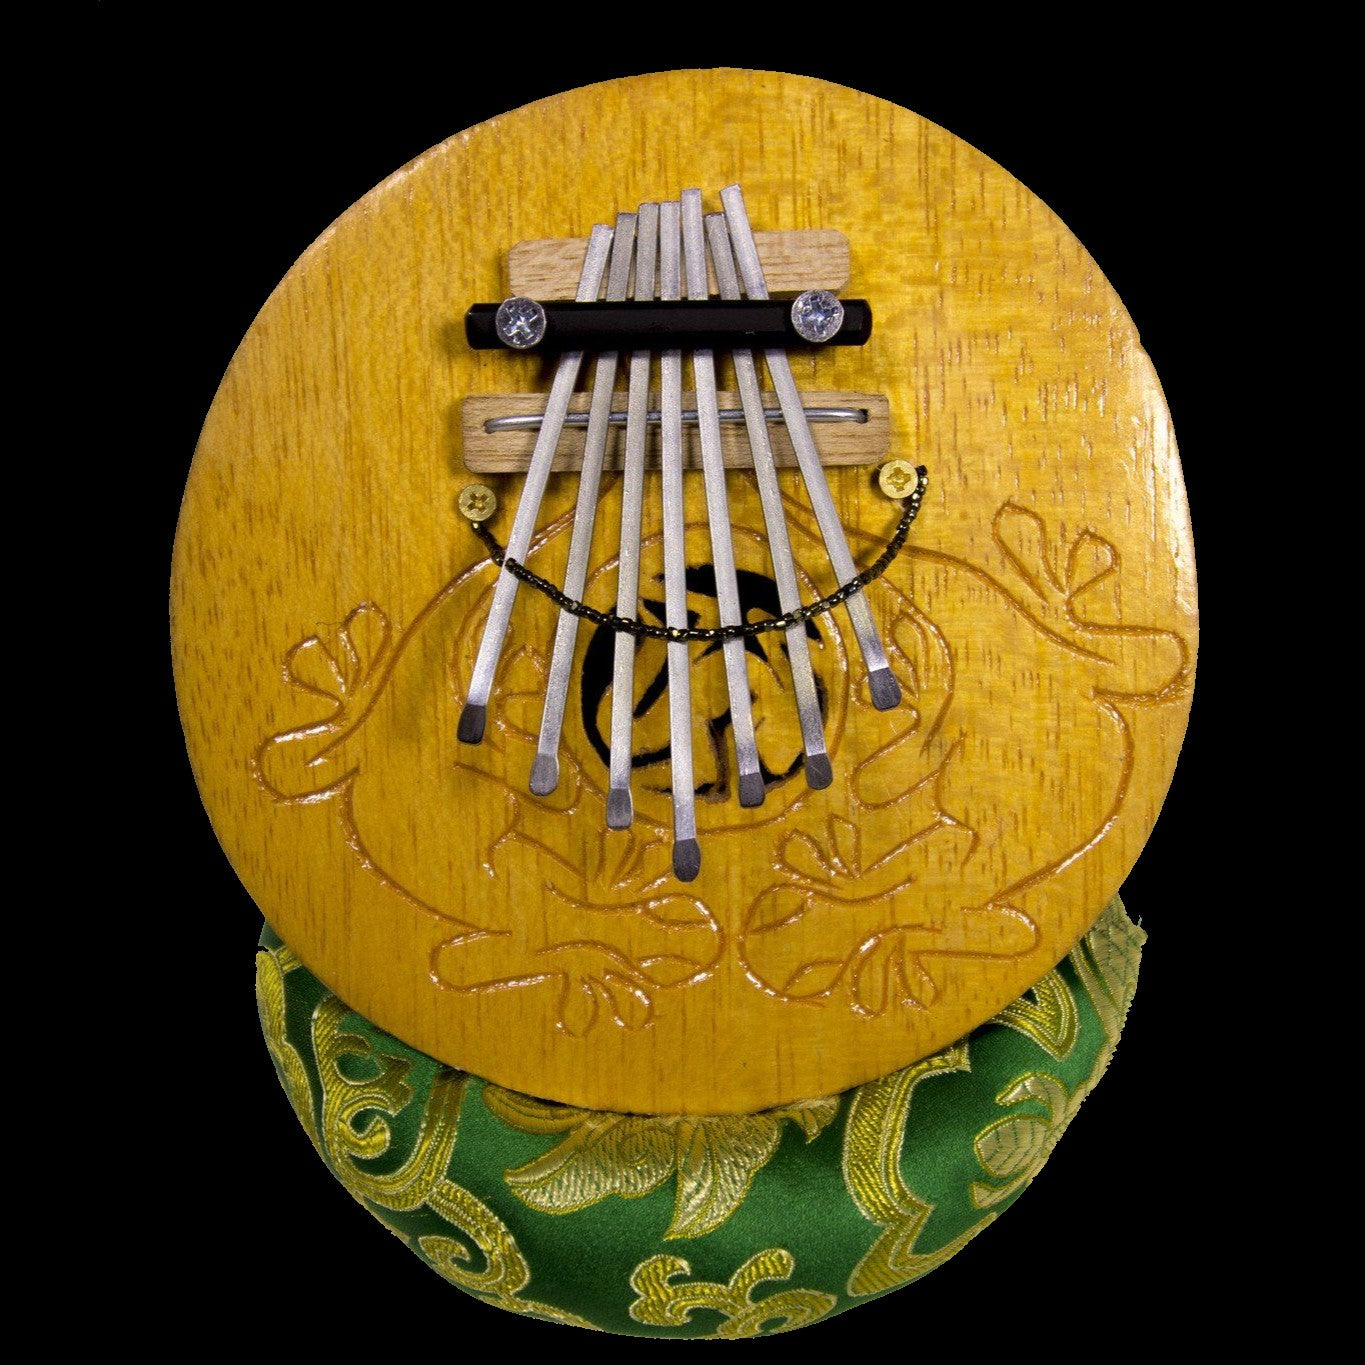 Balinese Musical Instrument - Kalimba